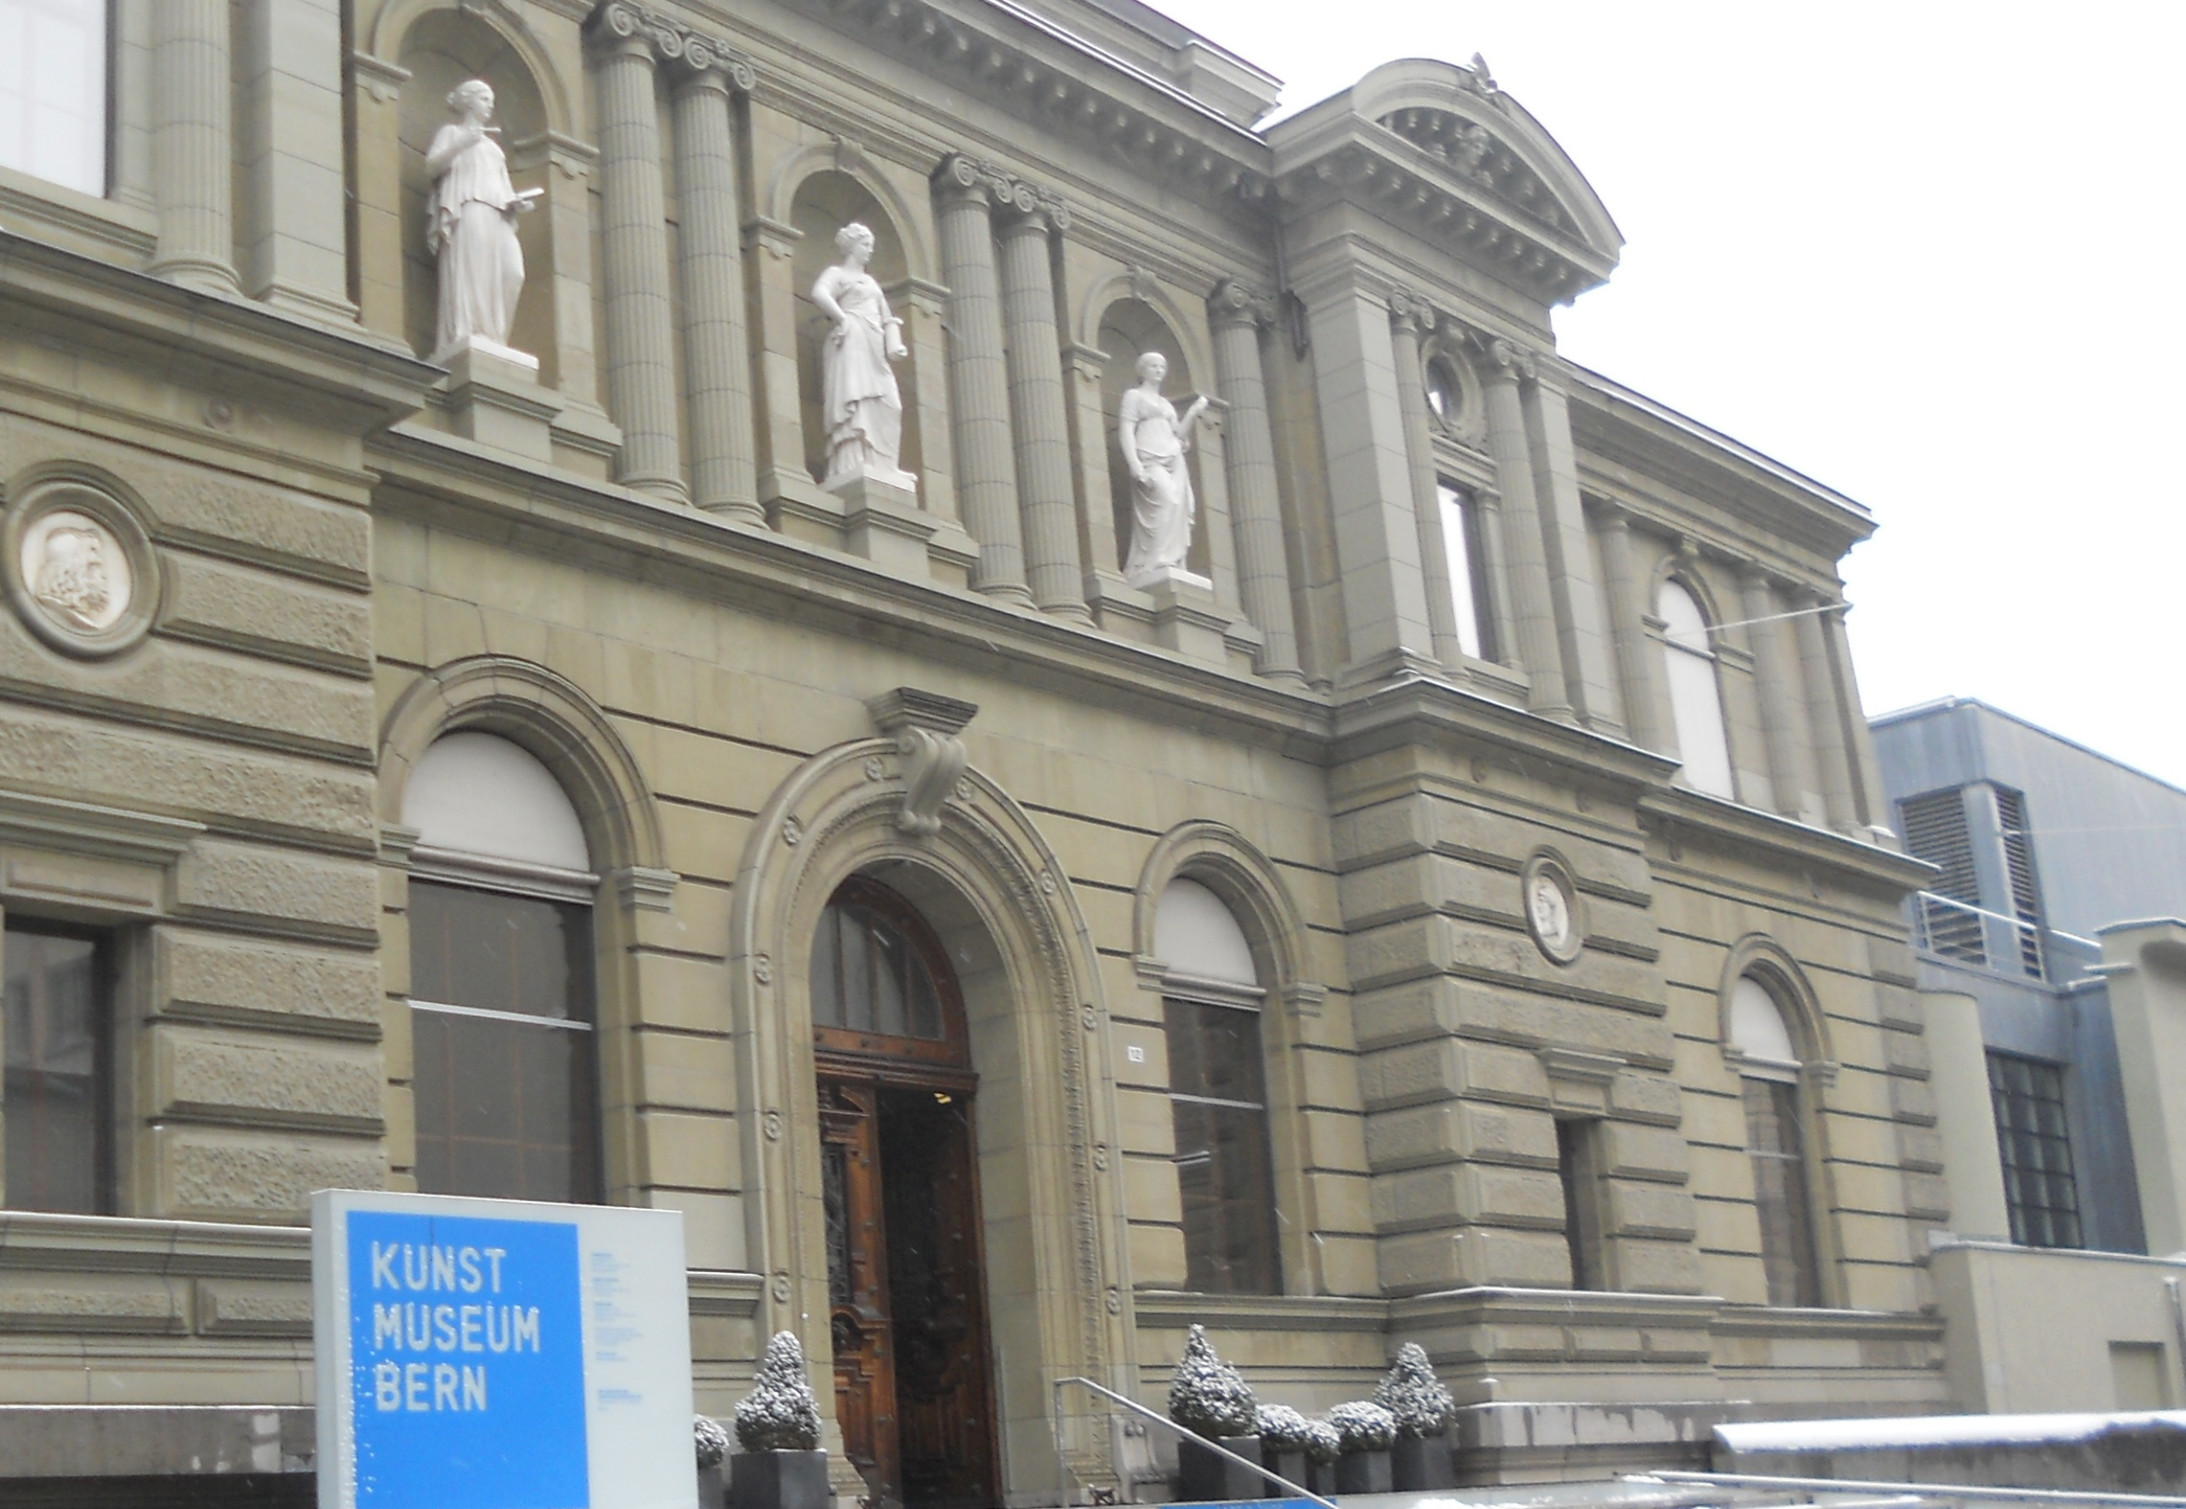 Das Kunstmuseum Bern, seit 1879 in diesem Bau, mitten in der Stadt angesiedelt. Rechts erkennbar der vor ein paar Jahren angefügte Erweiterungsbau. (Bild: André Pfenninger)